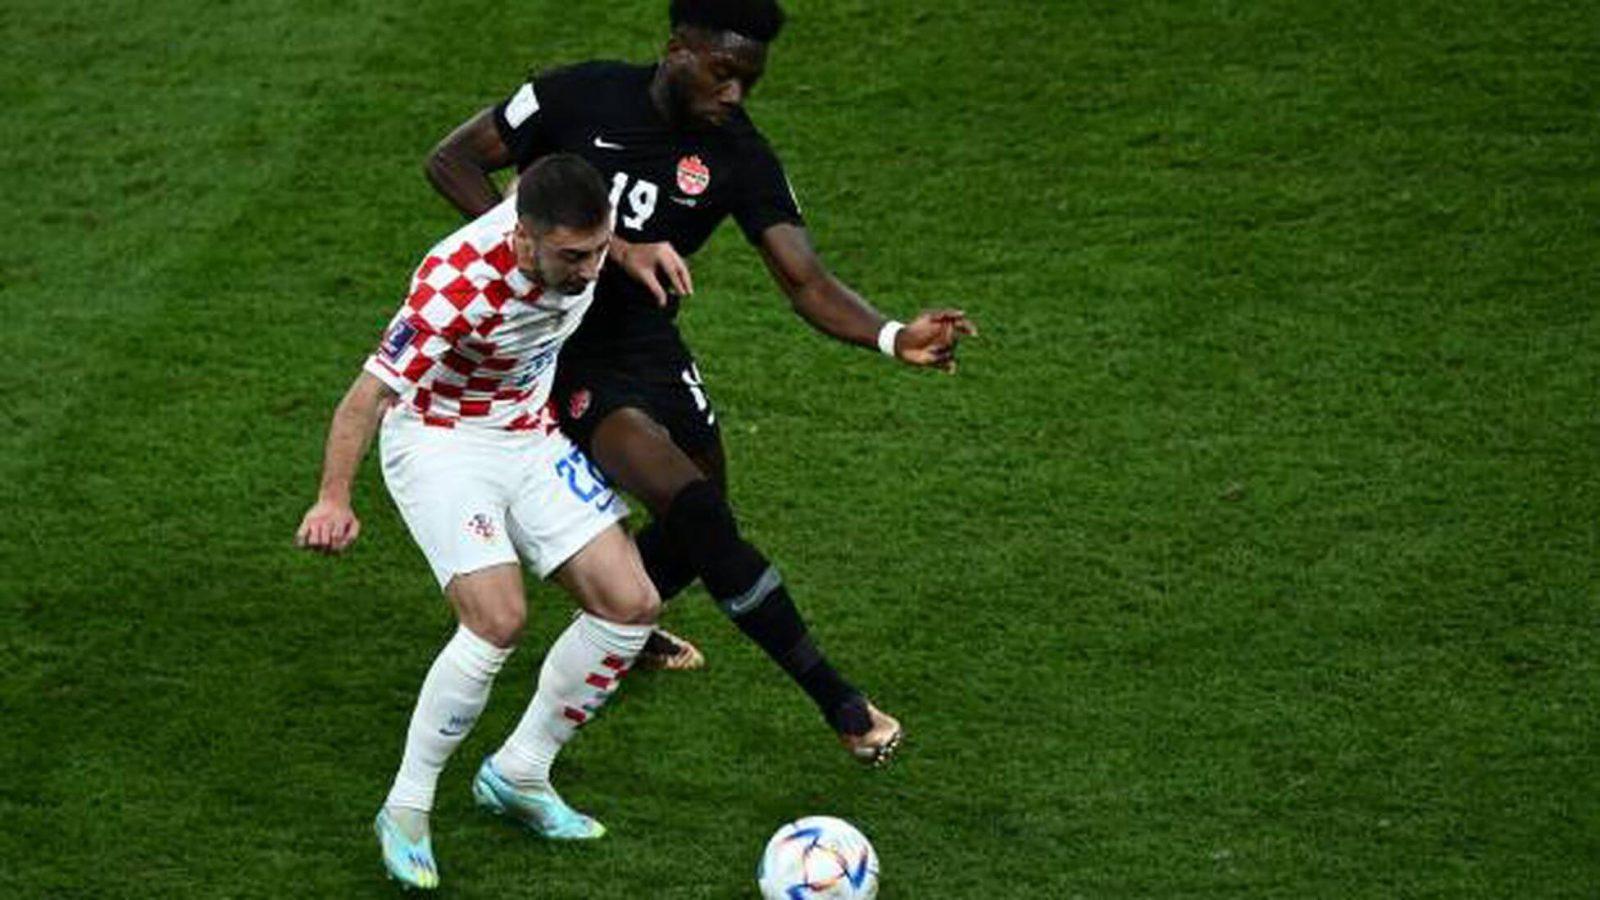 Κροατία - Καναδάς 4-1: Πλεονέκτημα για τους Κροάτες, αποχαιρετούν οι Καναδοί